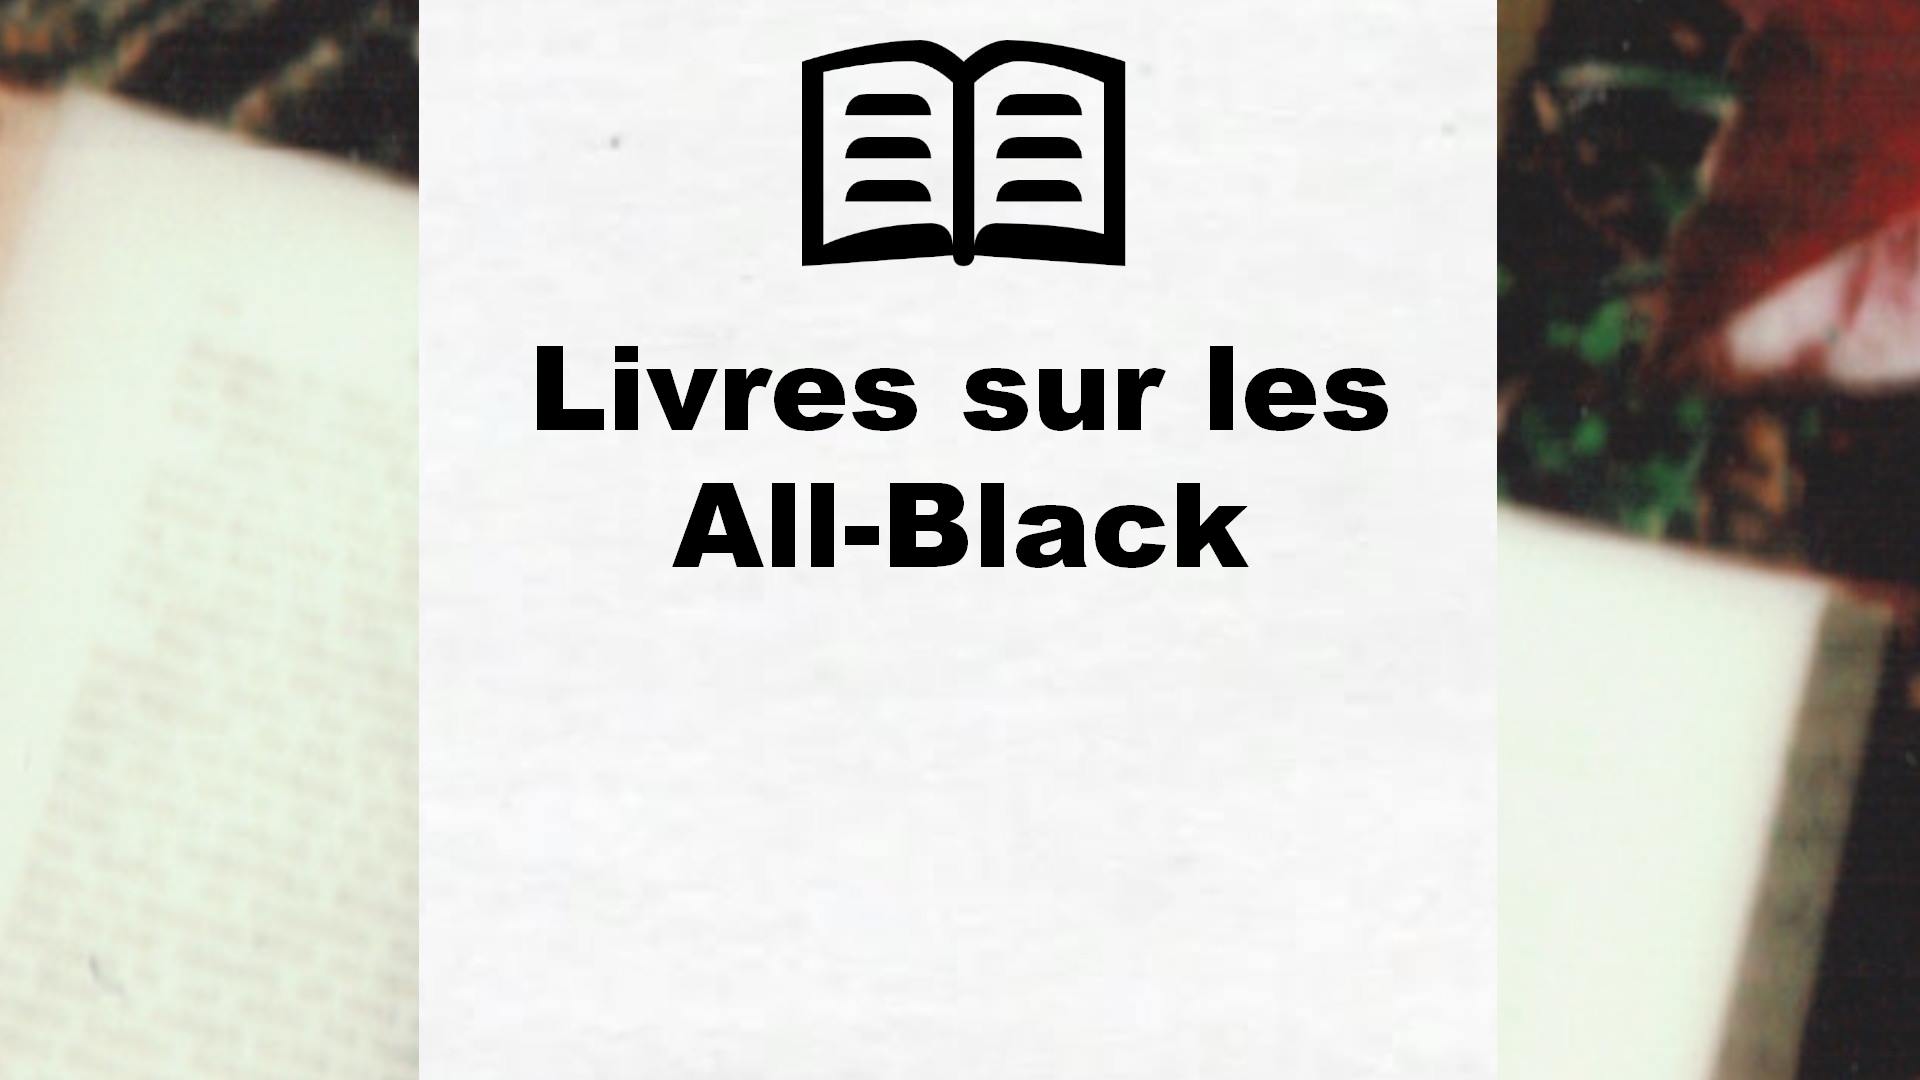 Livres sur les All-Black